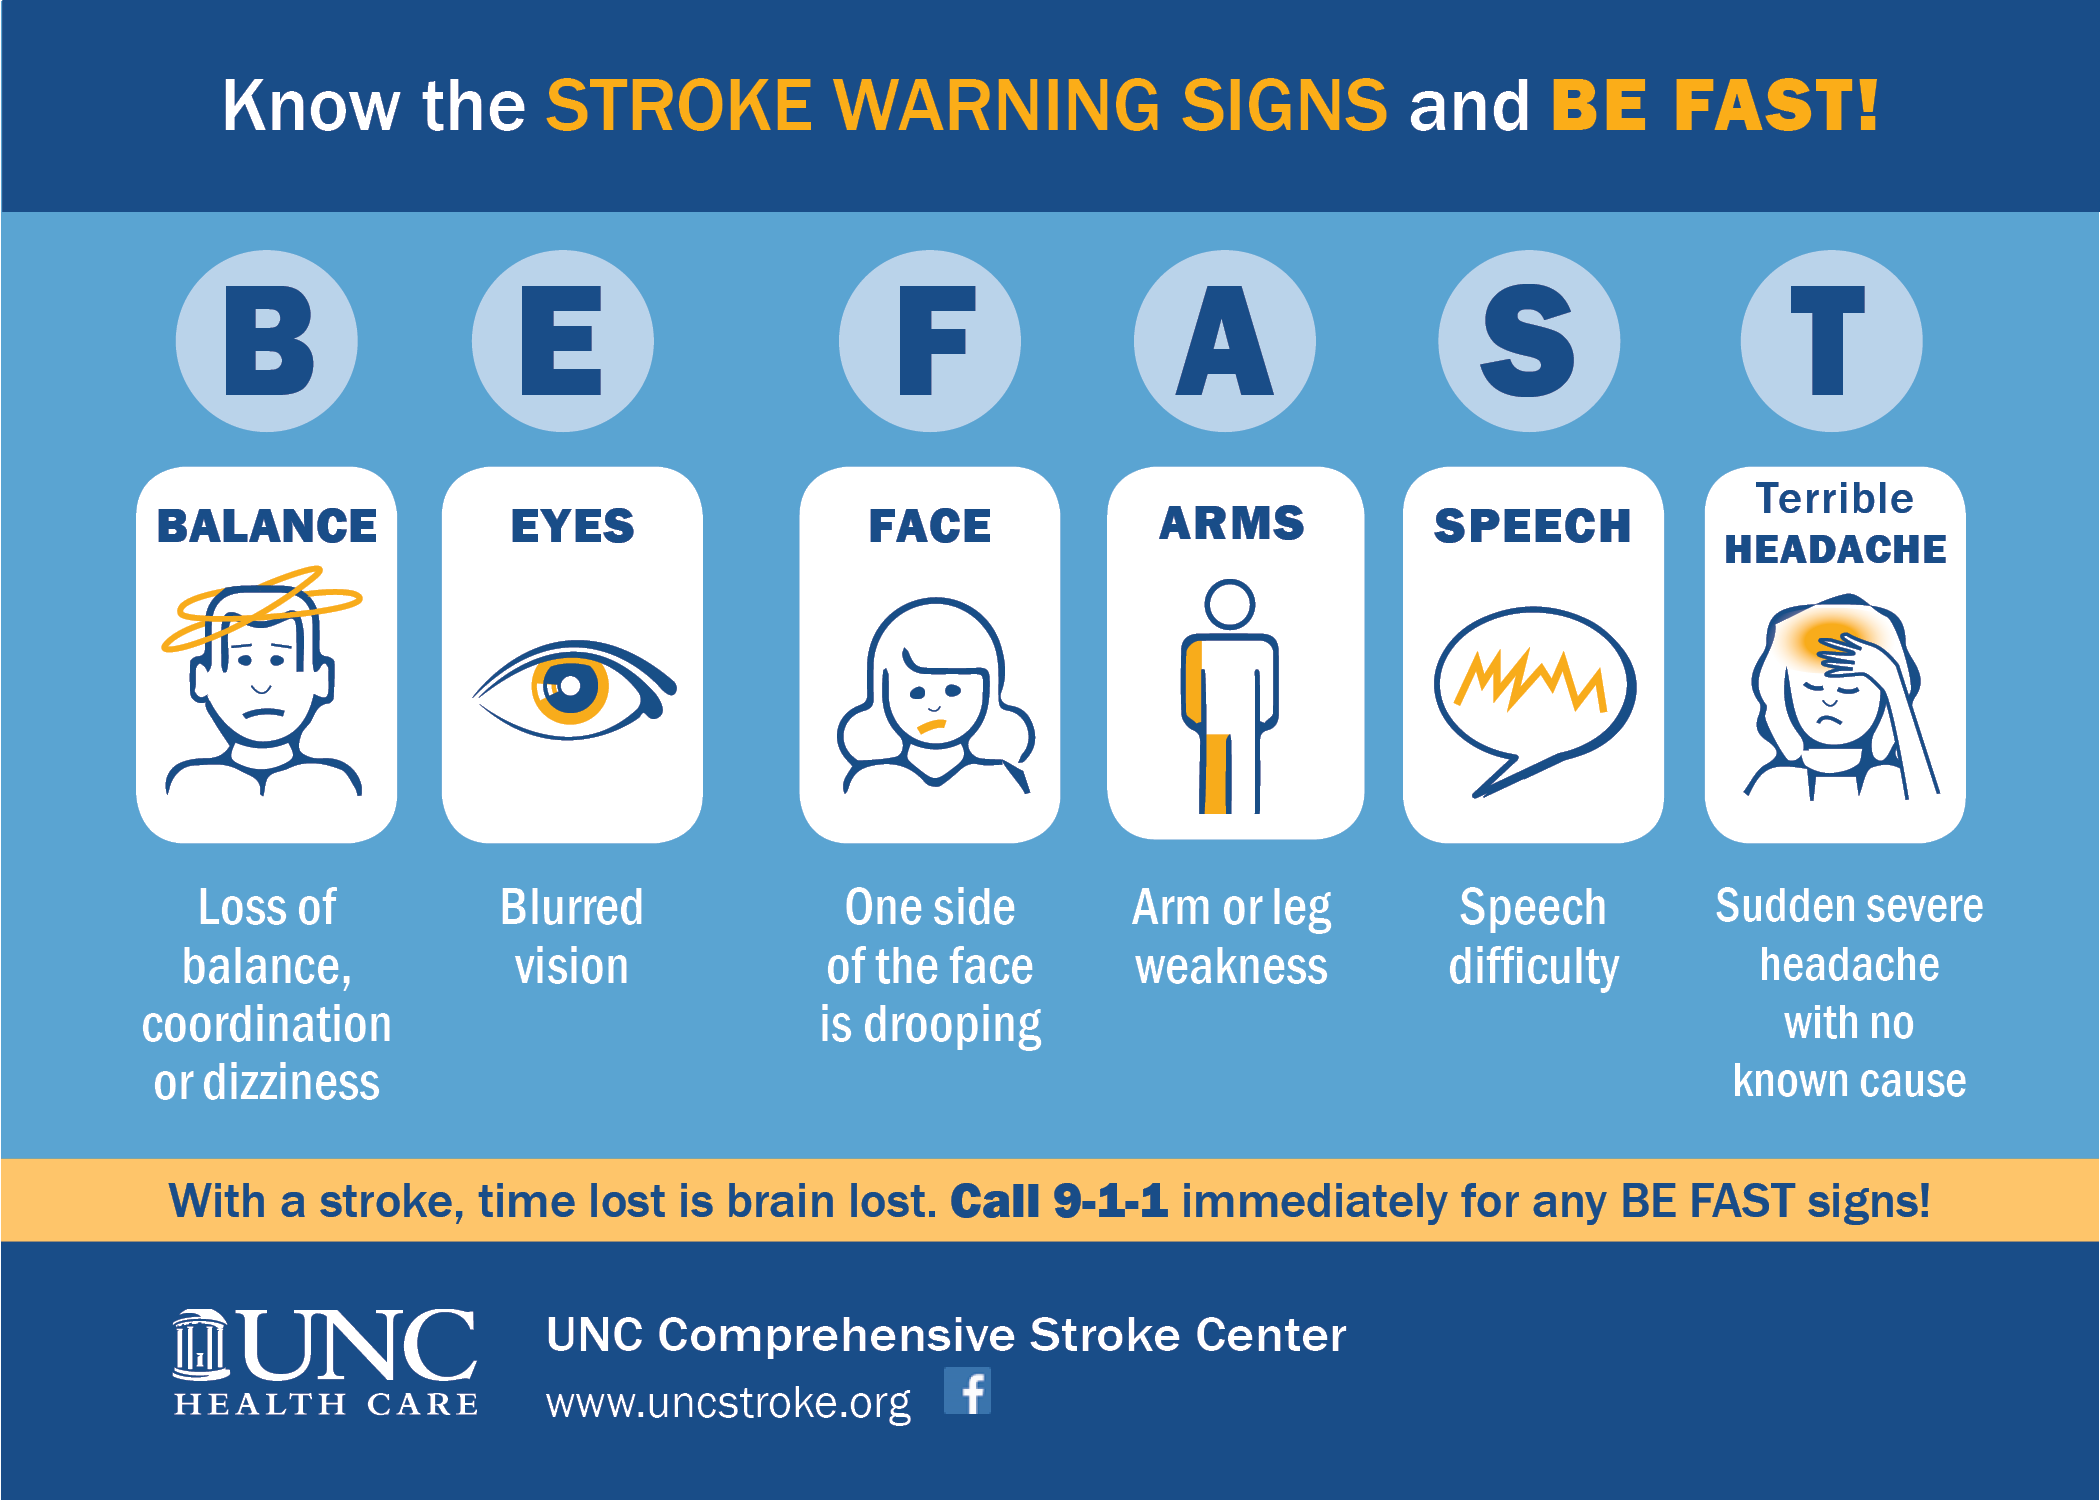 Stroke警告信号-失平衡、难见、面滑、臂突然麻木、难谈打911